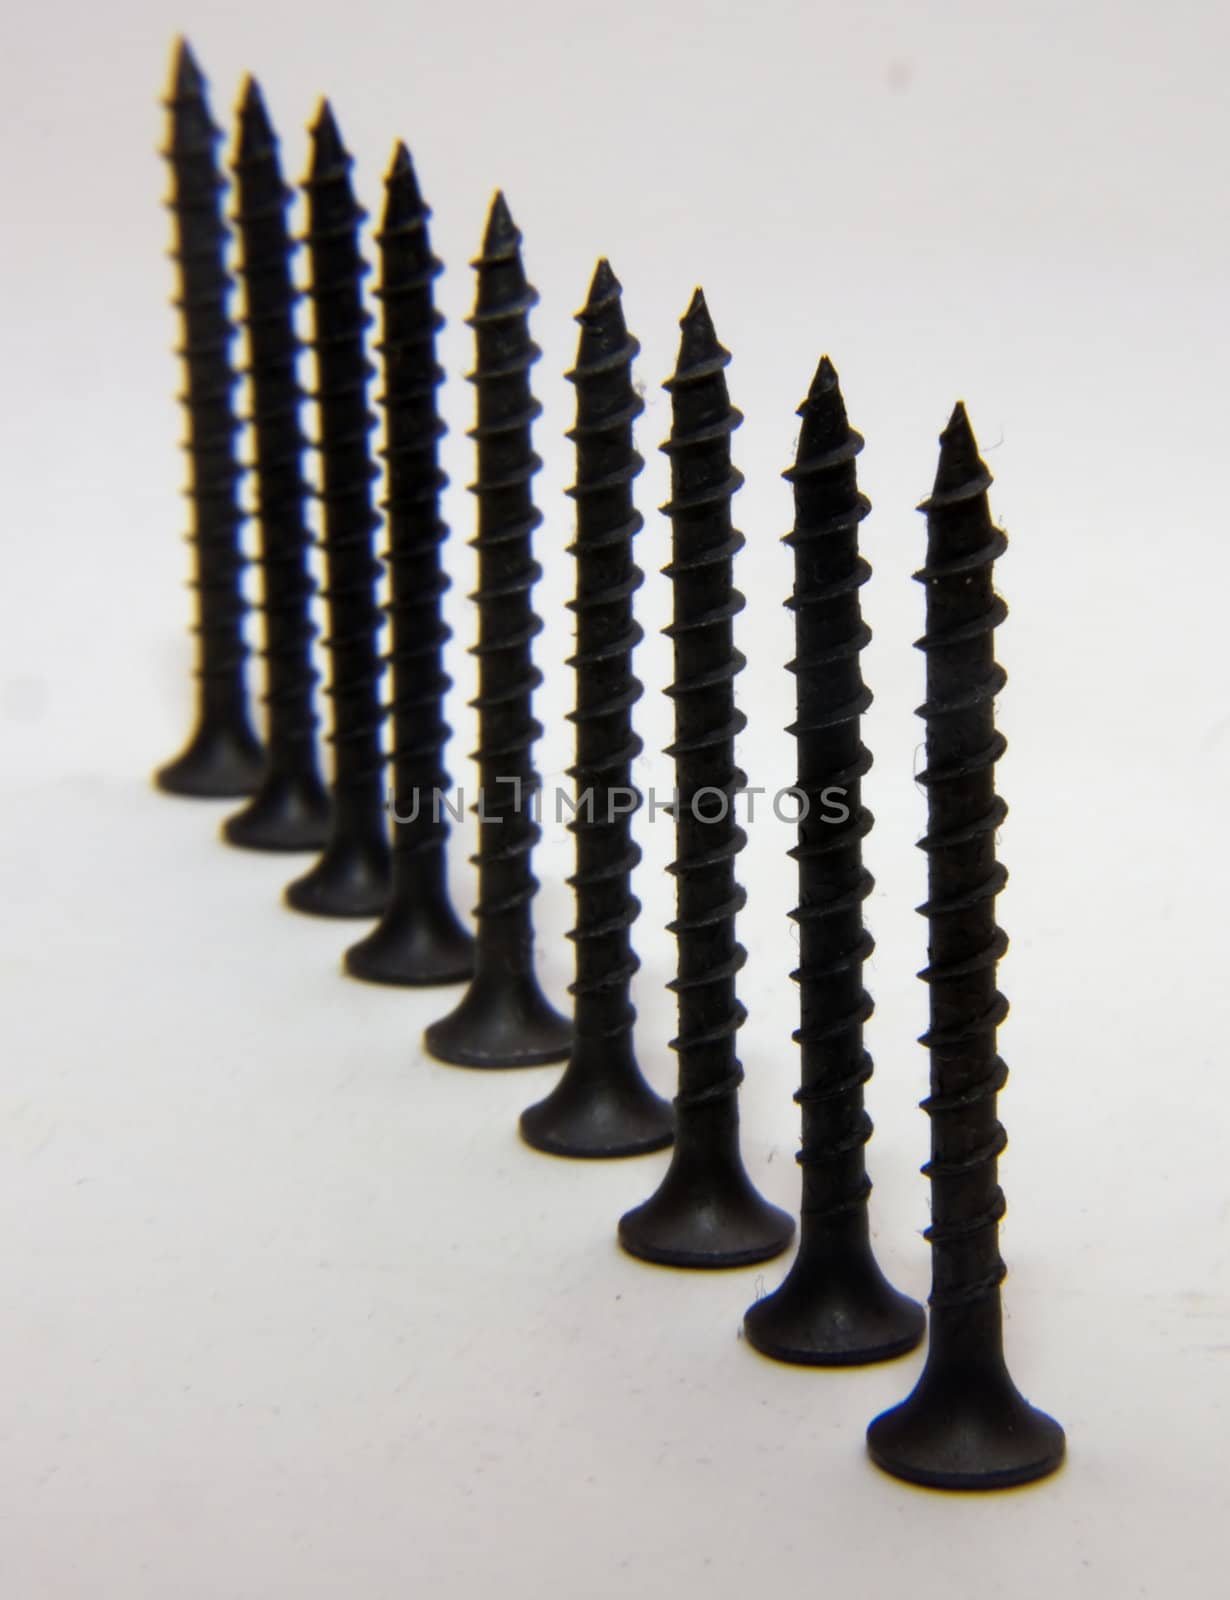 diagonal line of screws